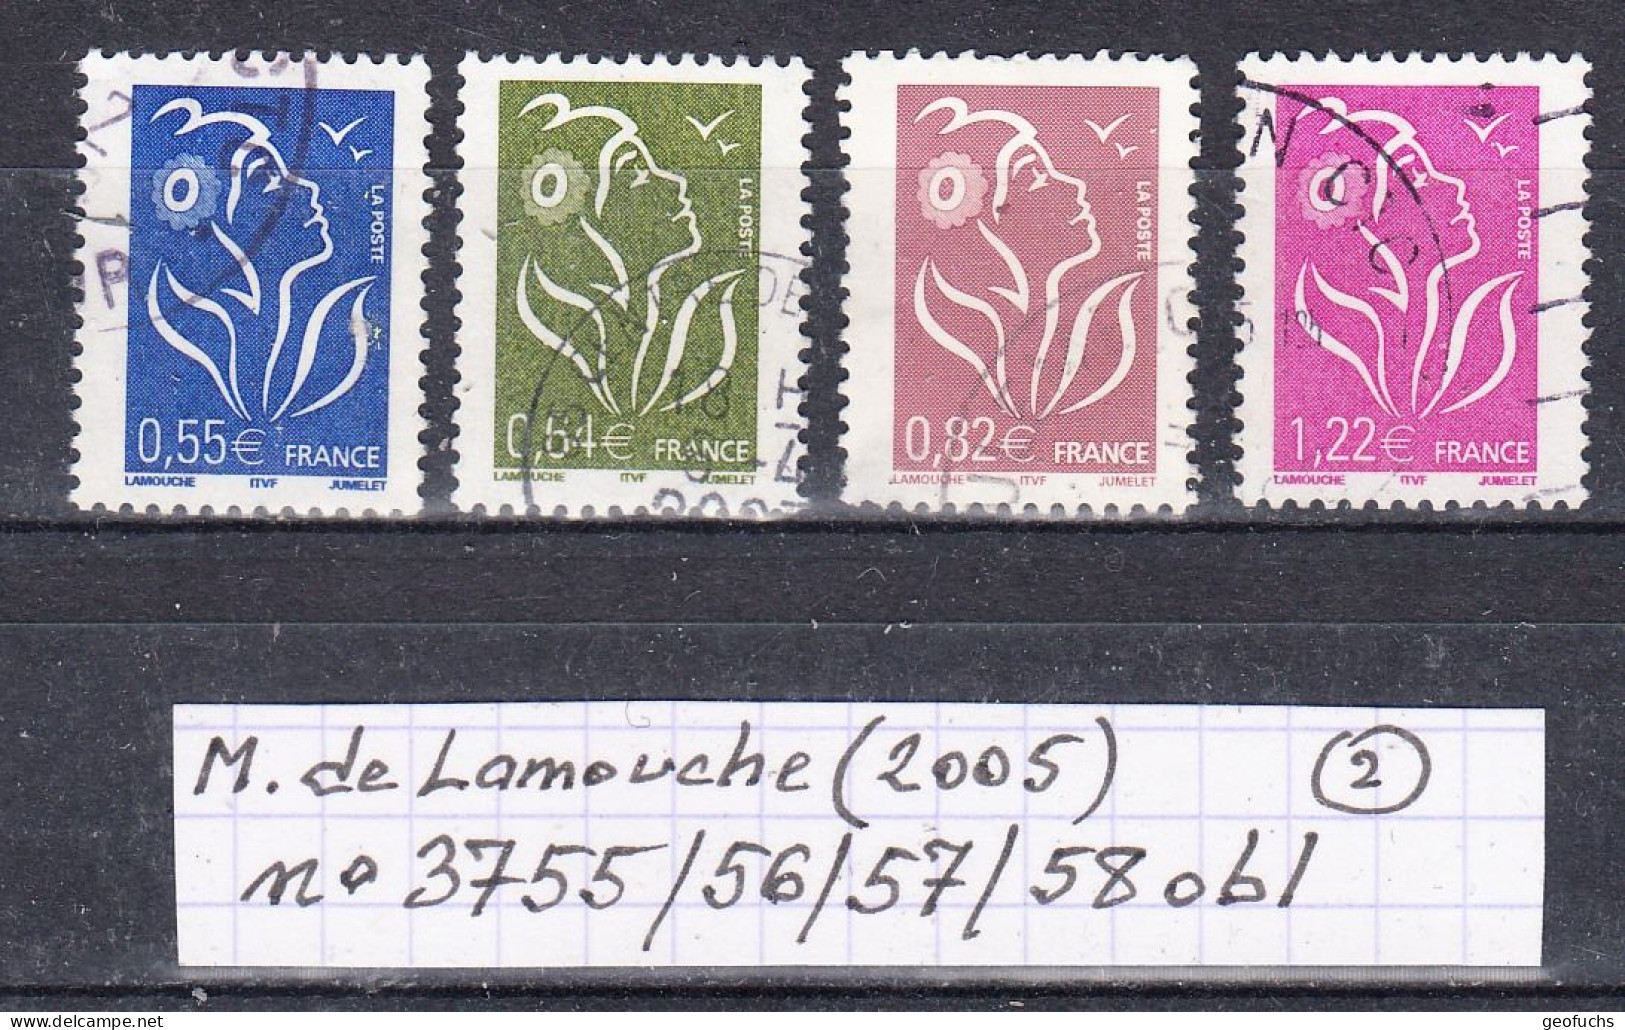 France Marianne De Lamouche (2005) Y/T N° 3755/56/57/58 Oblitérés (lot 2) - 2004-2008 Marianne De Lamouche